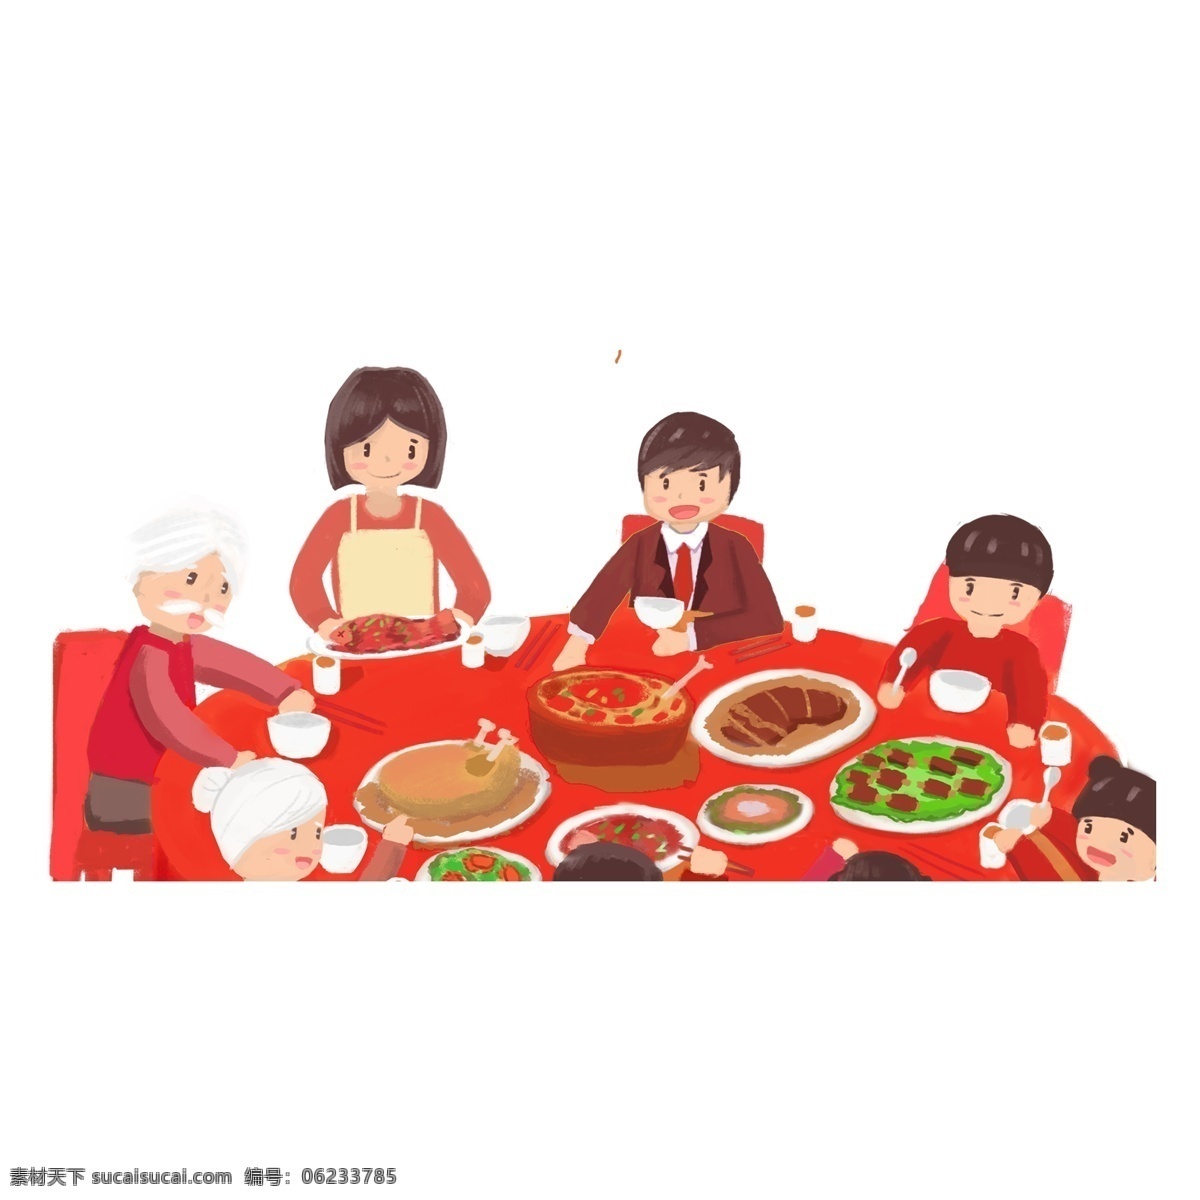 红色 过年 全家人 吃饭 元素 商用 团聚 团圆 透明素材 人物 吃年夜饭 新年 png元素 免抠元素